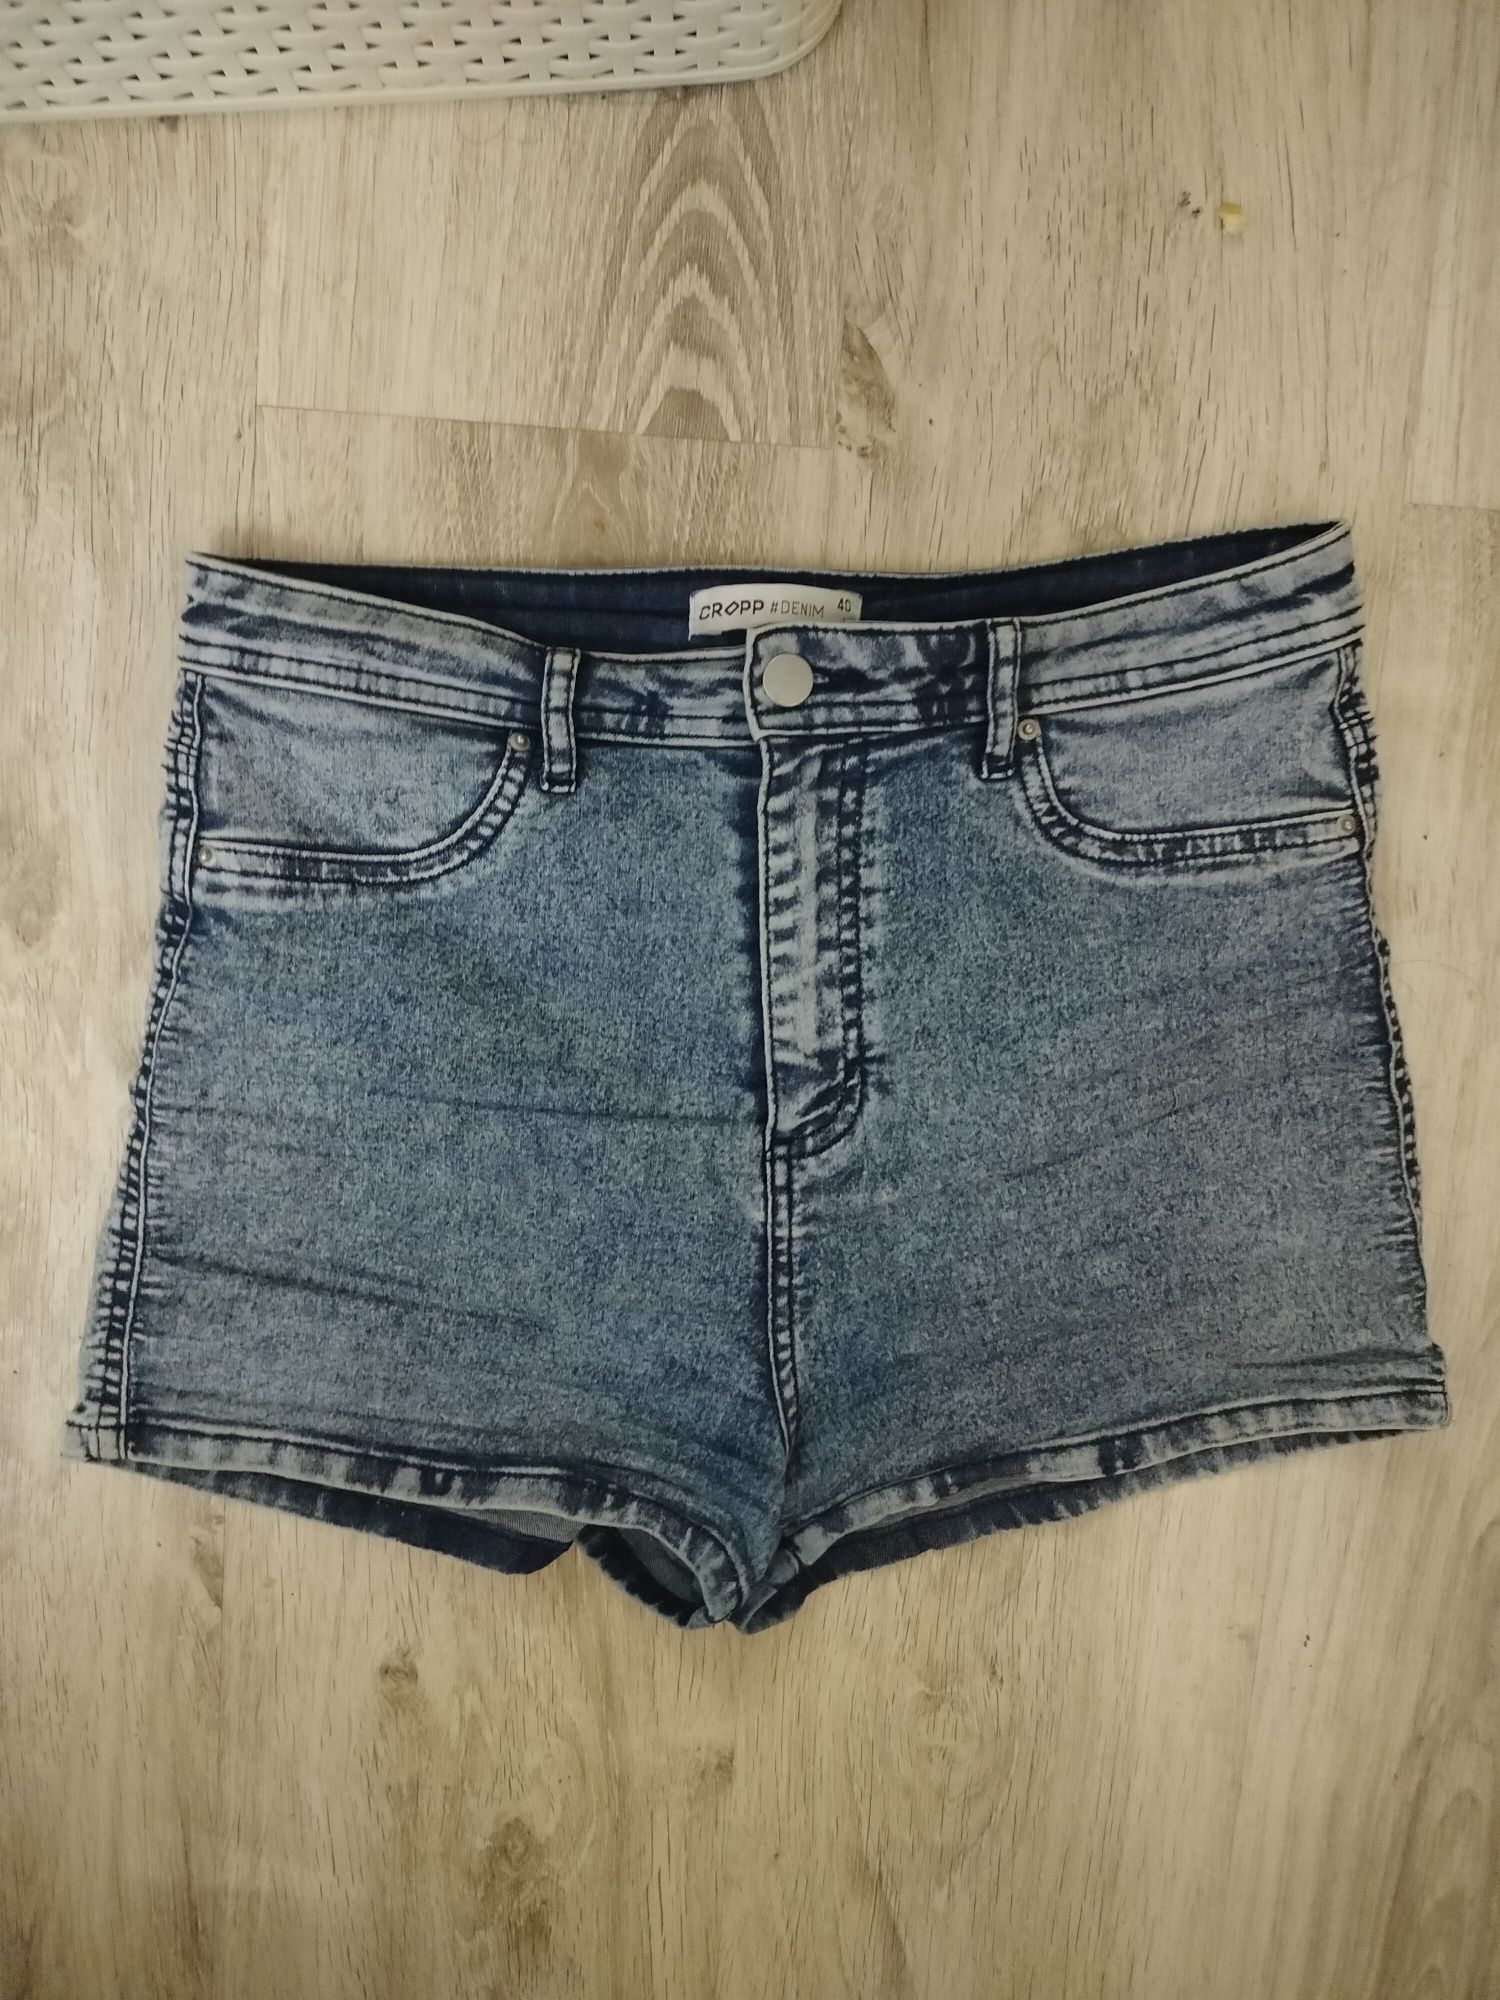 Spodenki krótkie szorty jeansowe damskie Cropp Denim L